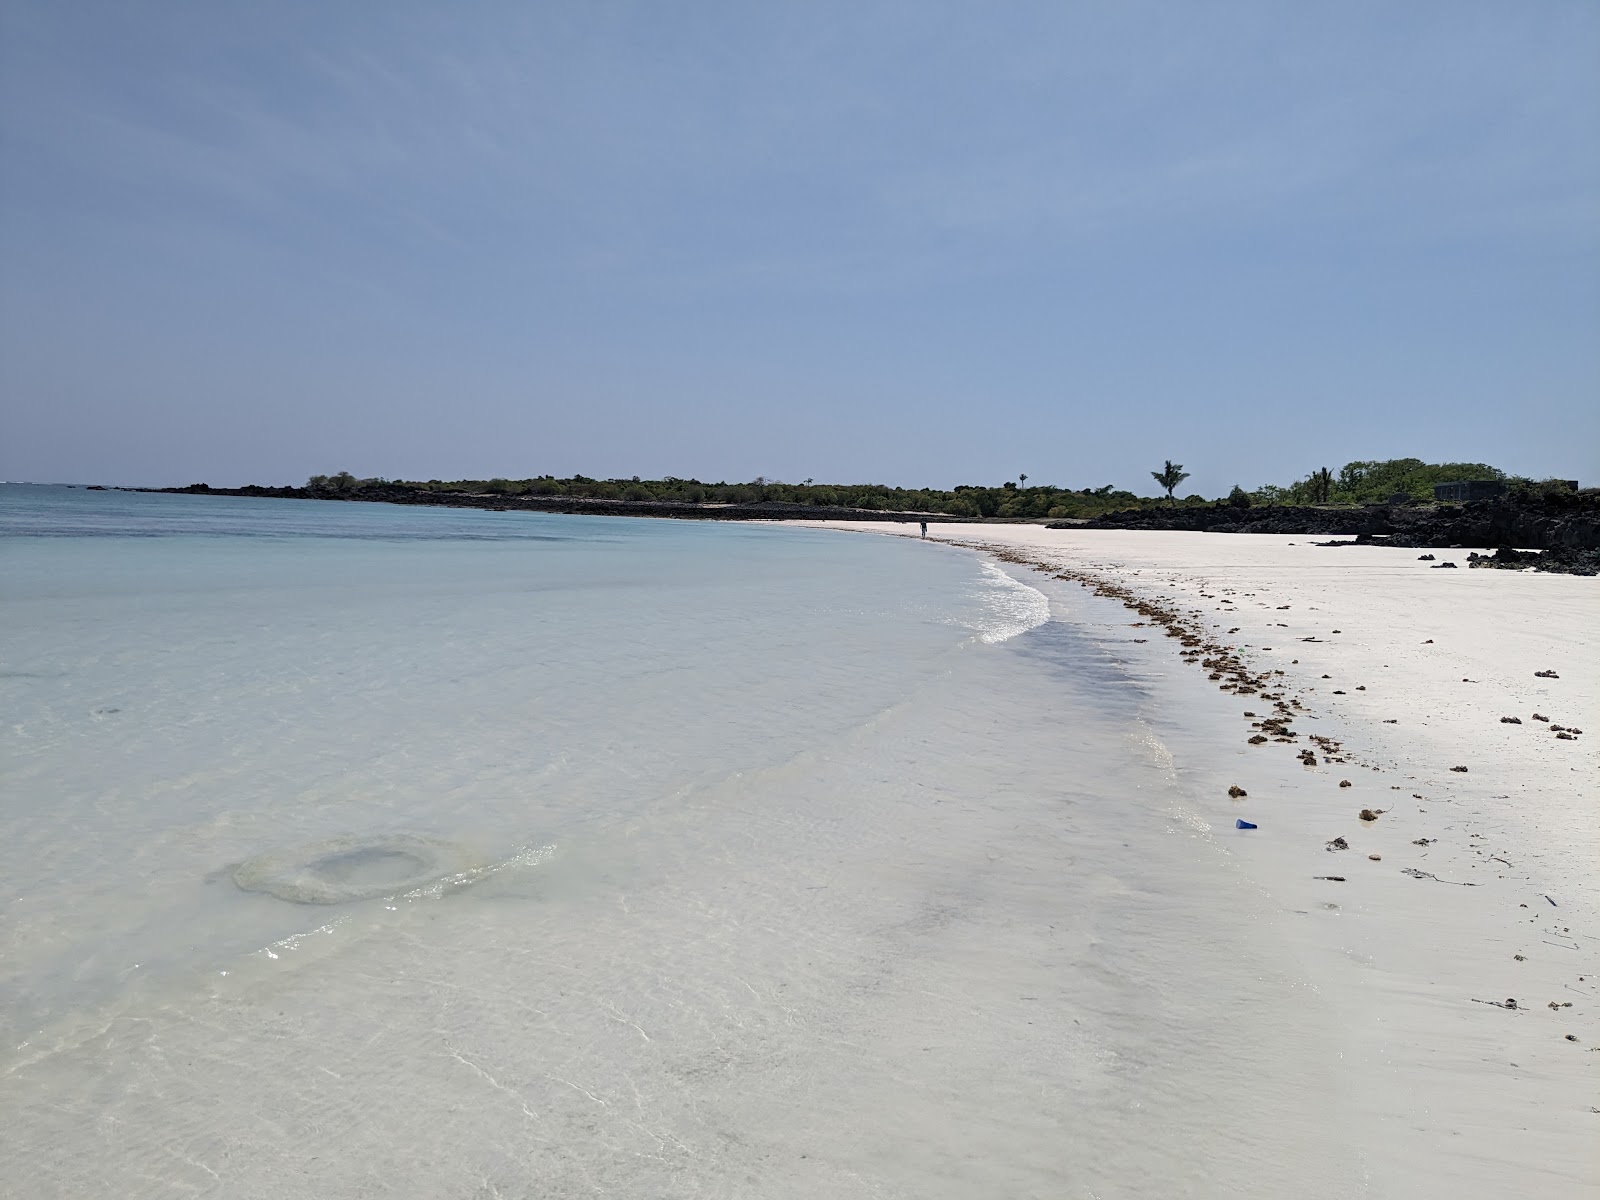 Zdjęcie Sada Beach z powierzchnią biały piasek